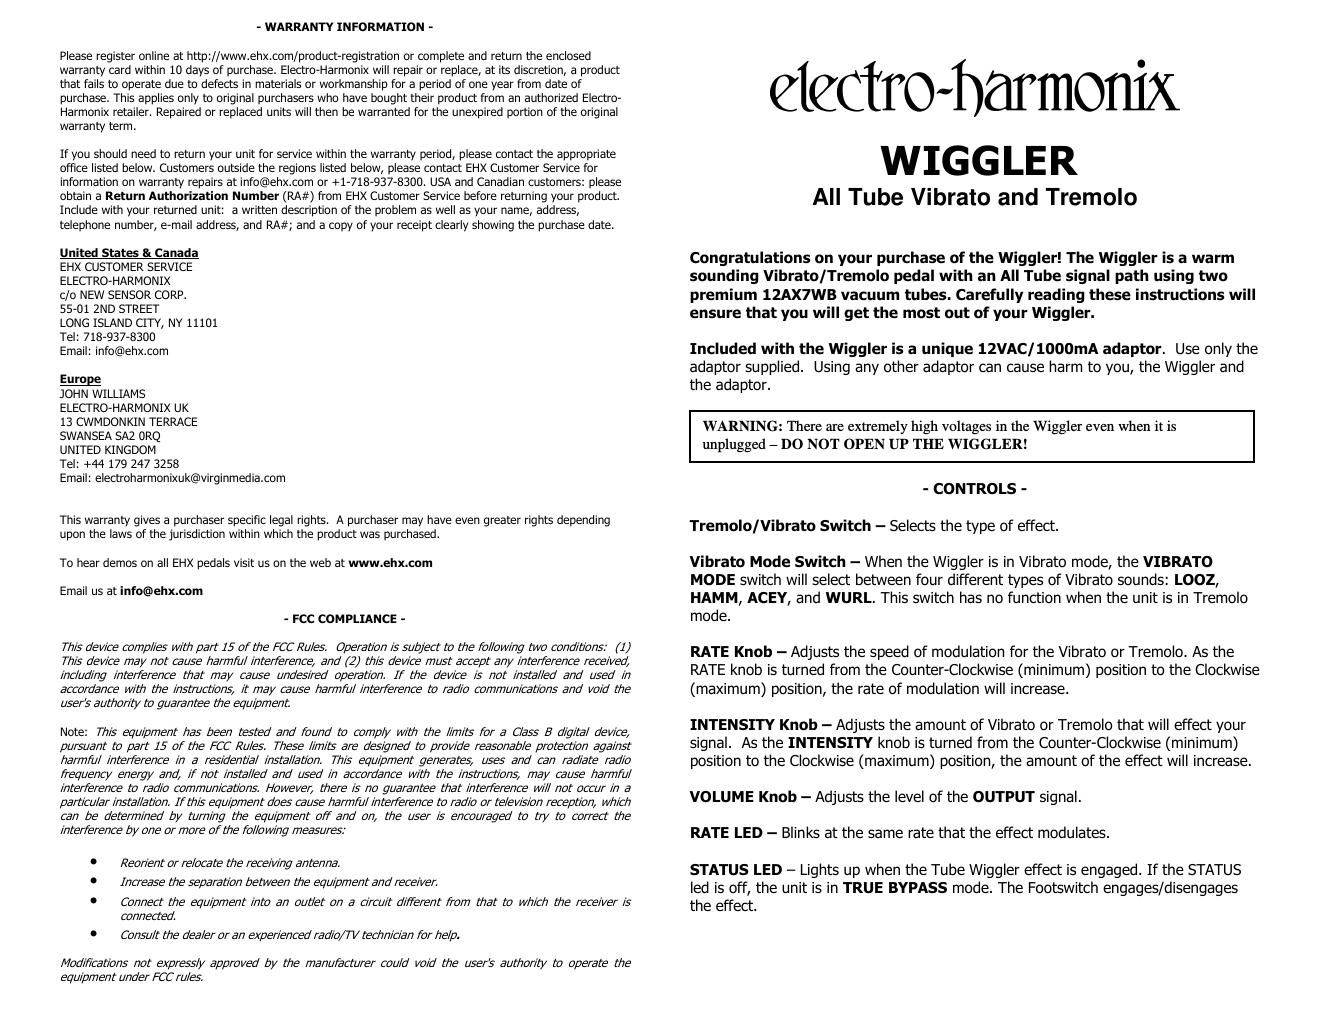 electro harmonix wiggler manual